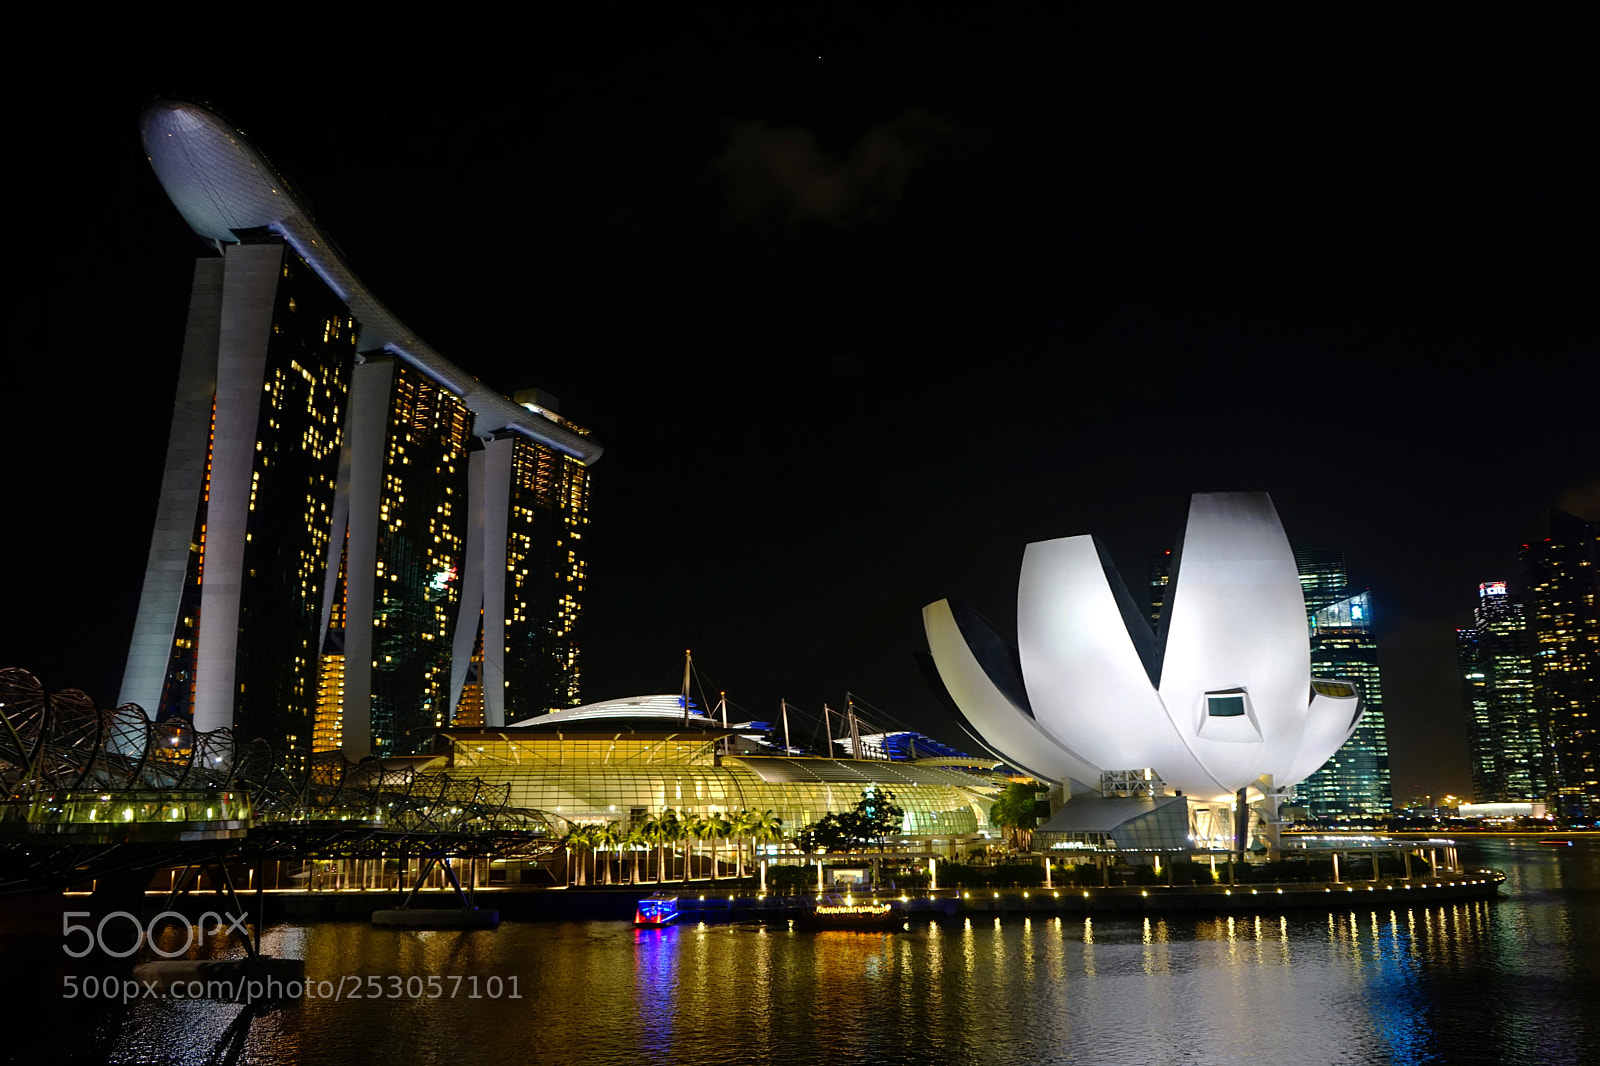 Sony a7 sample photo. Marina bay nightscape, singapore photography